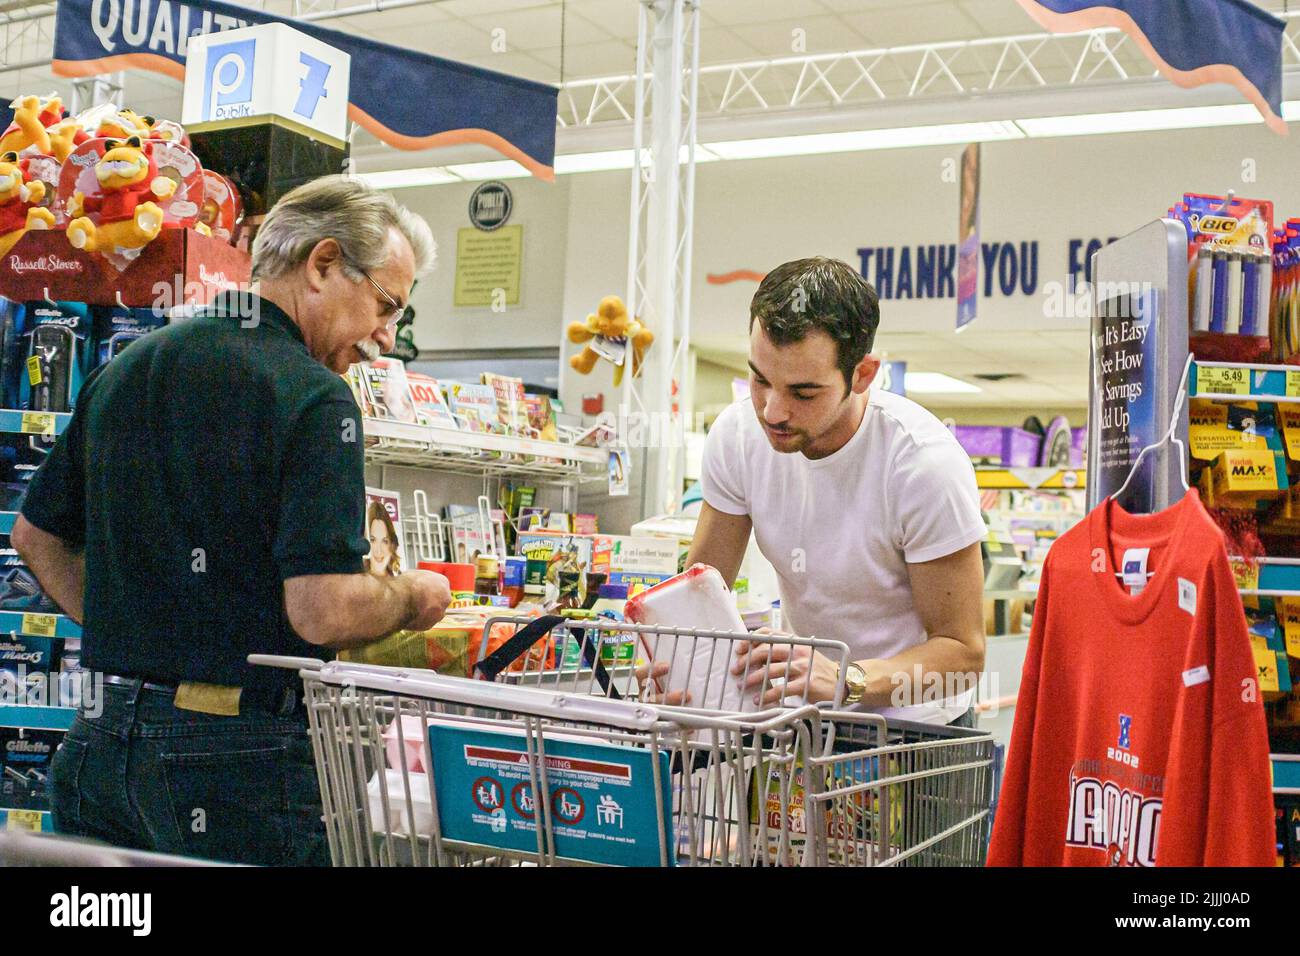 Miami Beach Florida, Publix Grocery Store, alimentari, supermercato, shopping shopper acquirenti senior adulto figlio uomo mercato uomo acquistare linea checkout Foto Stock